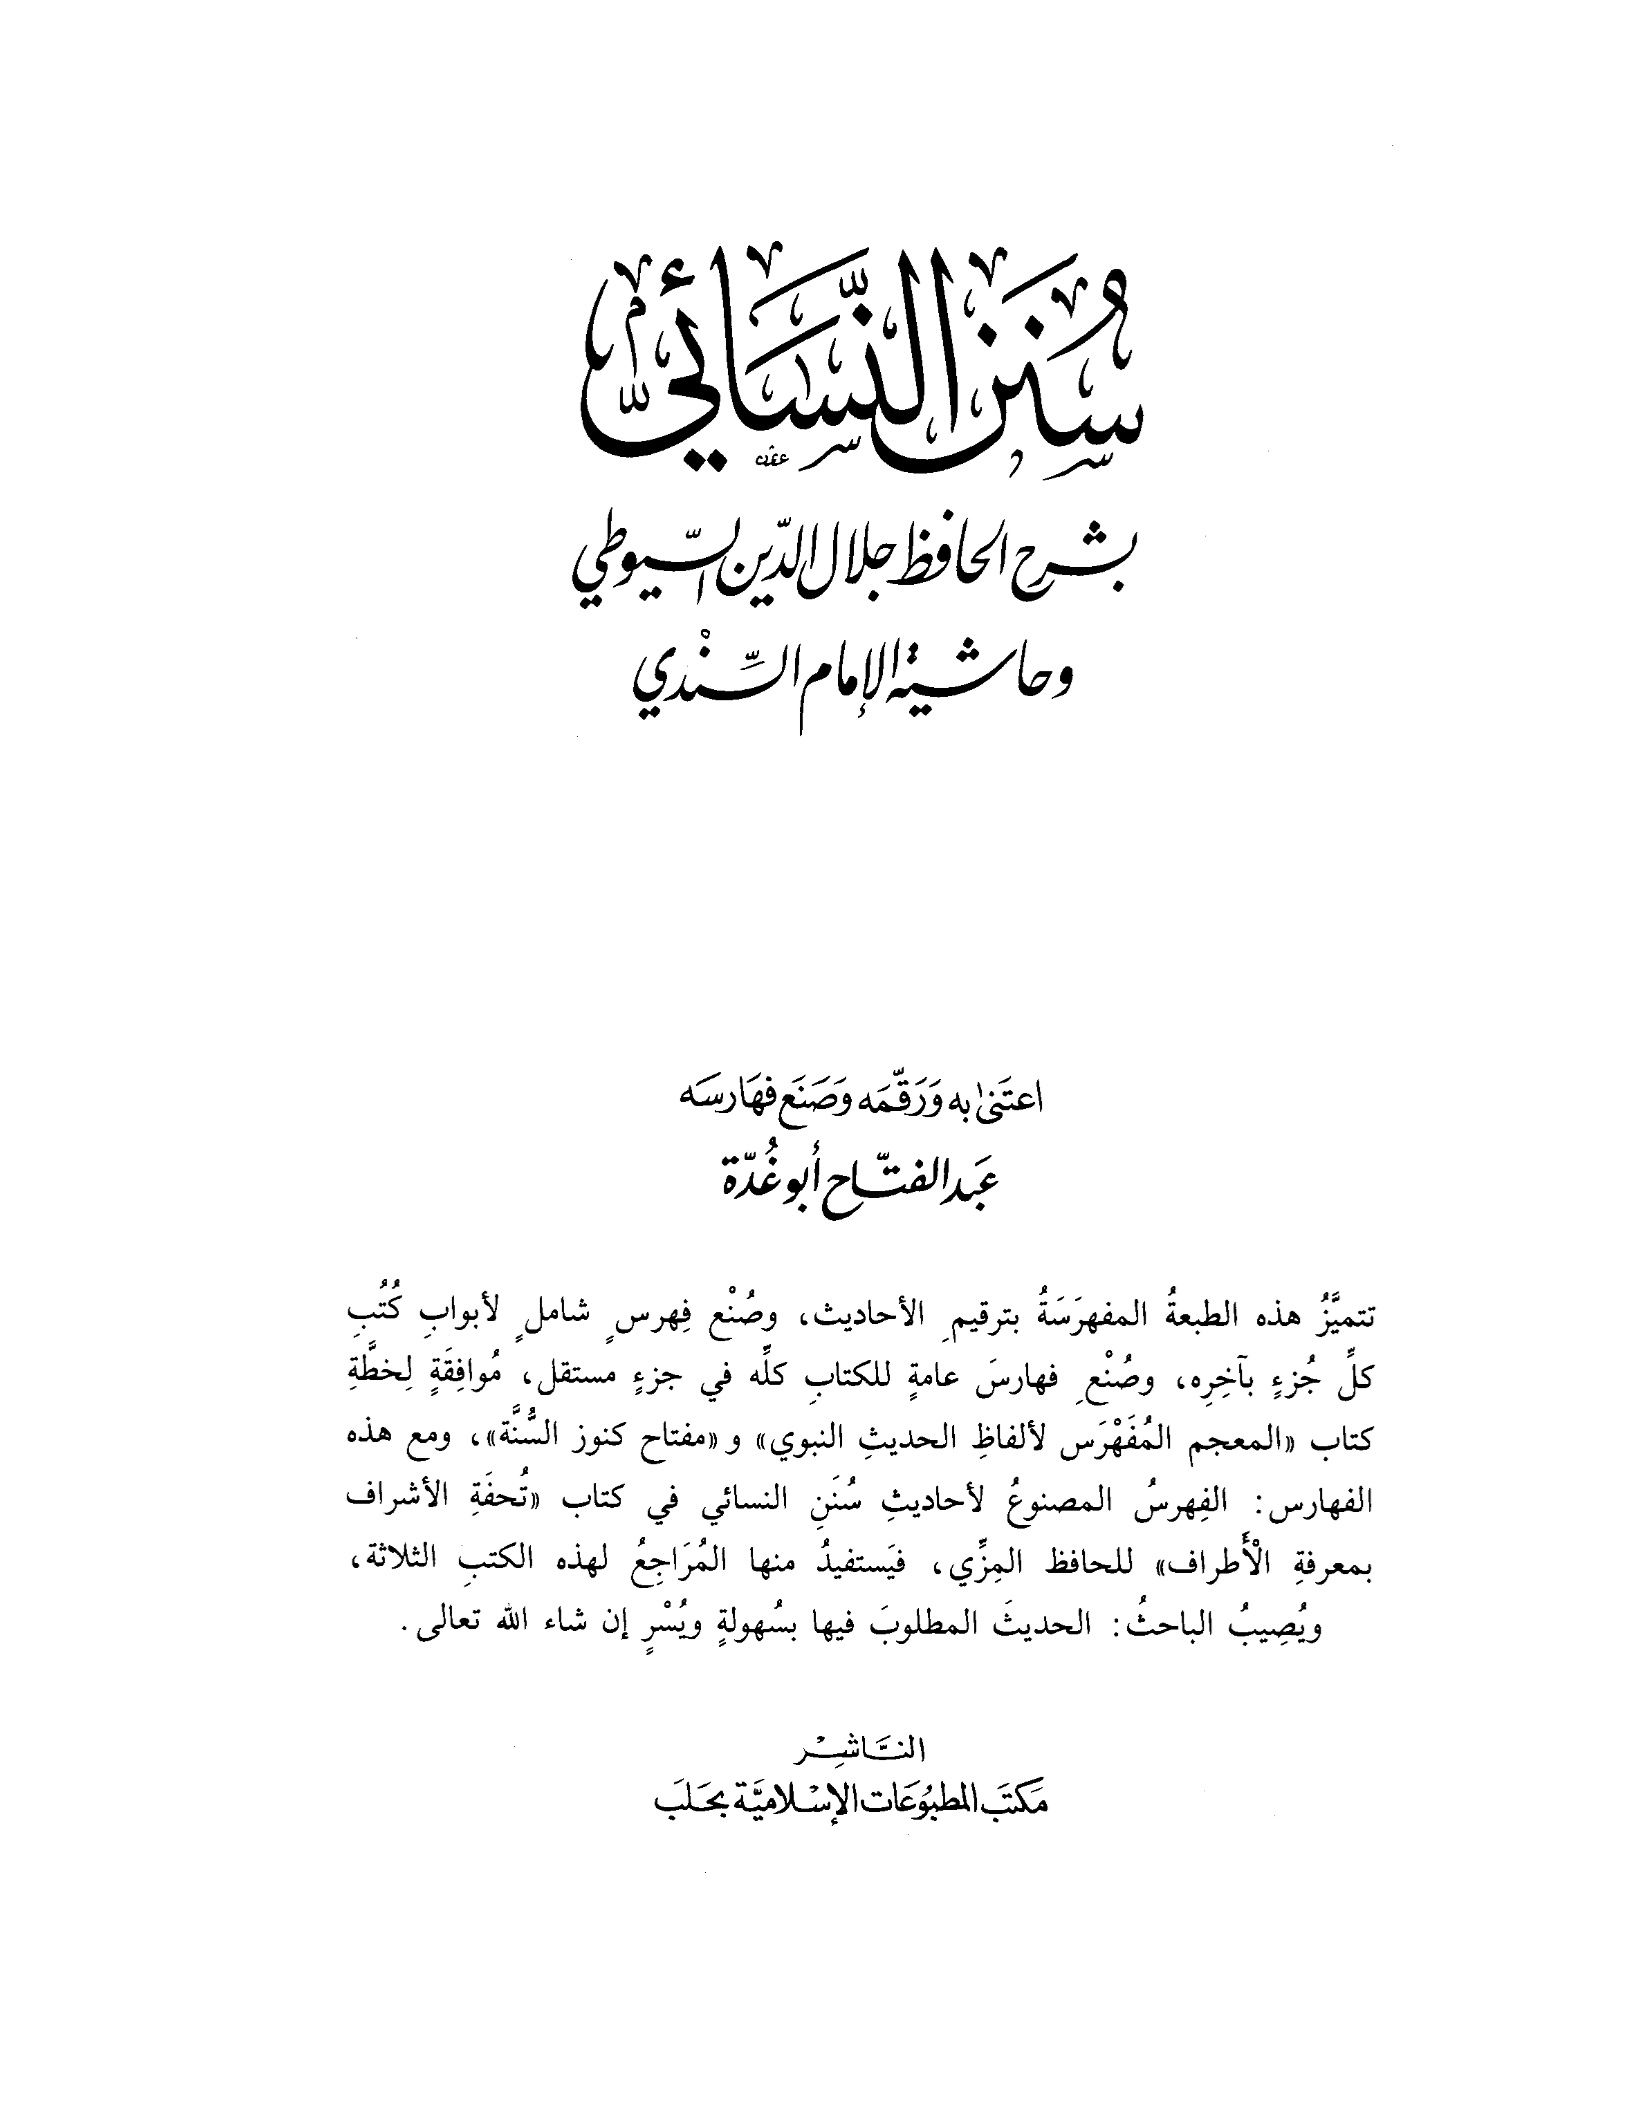 Al-Sunan al-Sughra